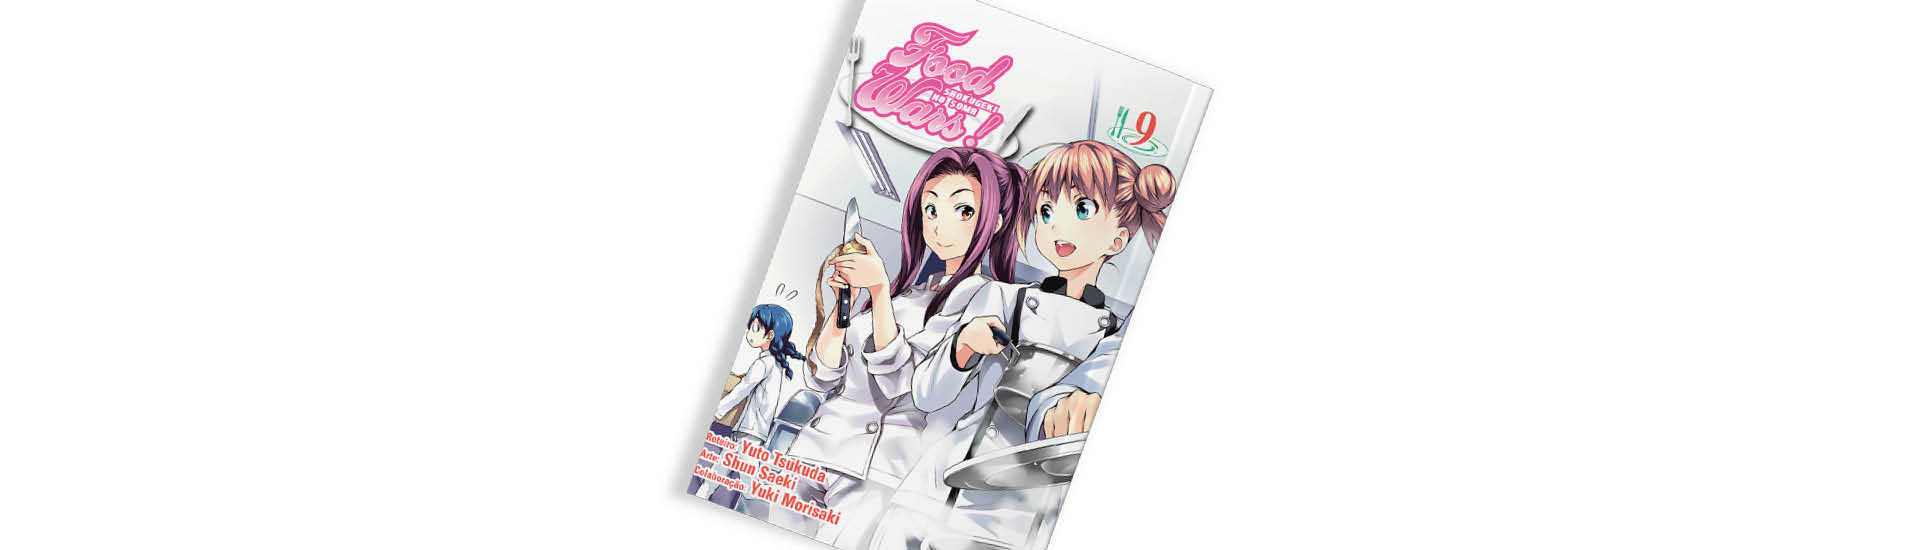 Capa do mangá ‘Food Wars!’, de Yuuto Tsukuda, Yuki Morisaki e Shun Saeki em fundo branco